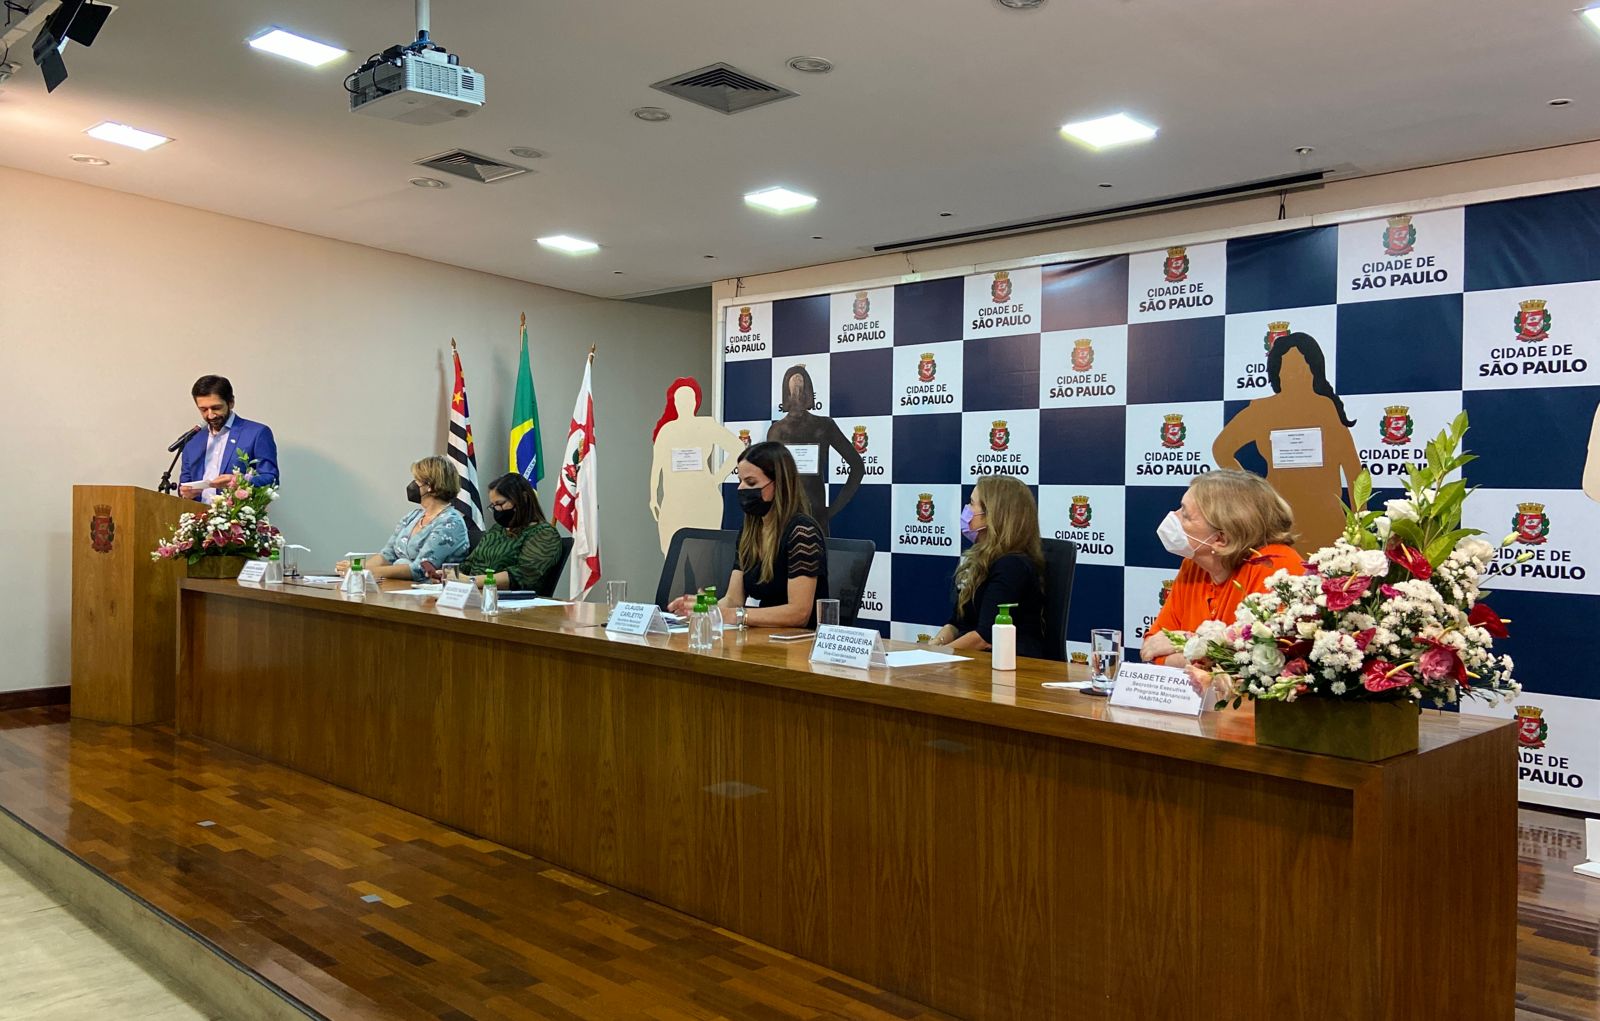 Prefeito Ricardo Nunes falando no púlpito, em seguida as secretárias mulheres estão sentadas compondo a mesa. 